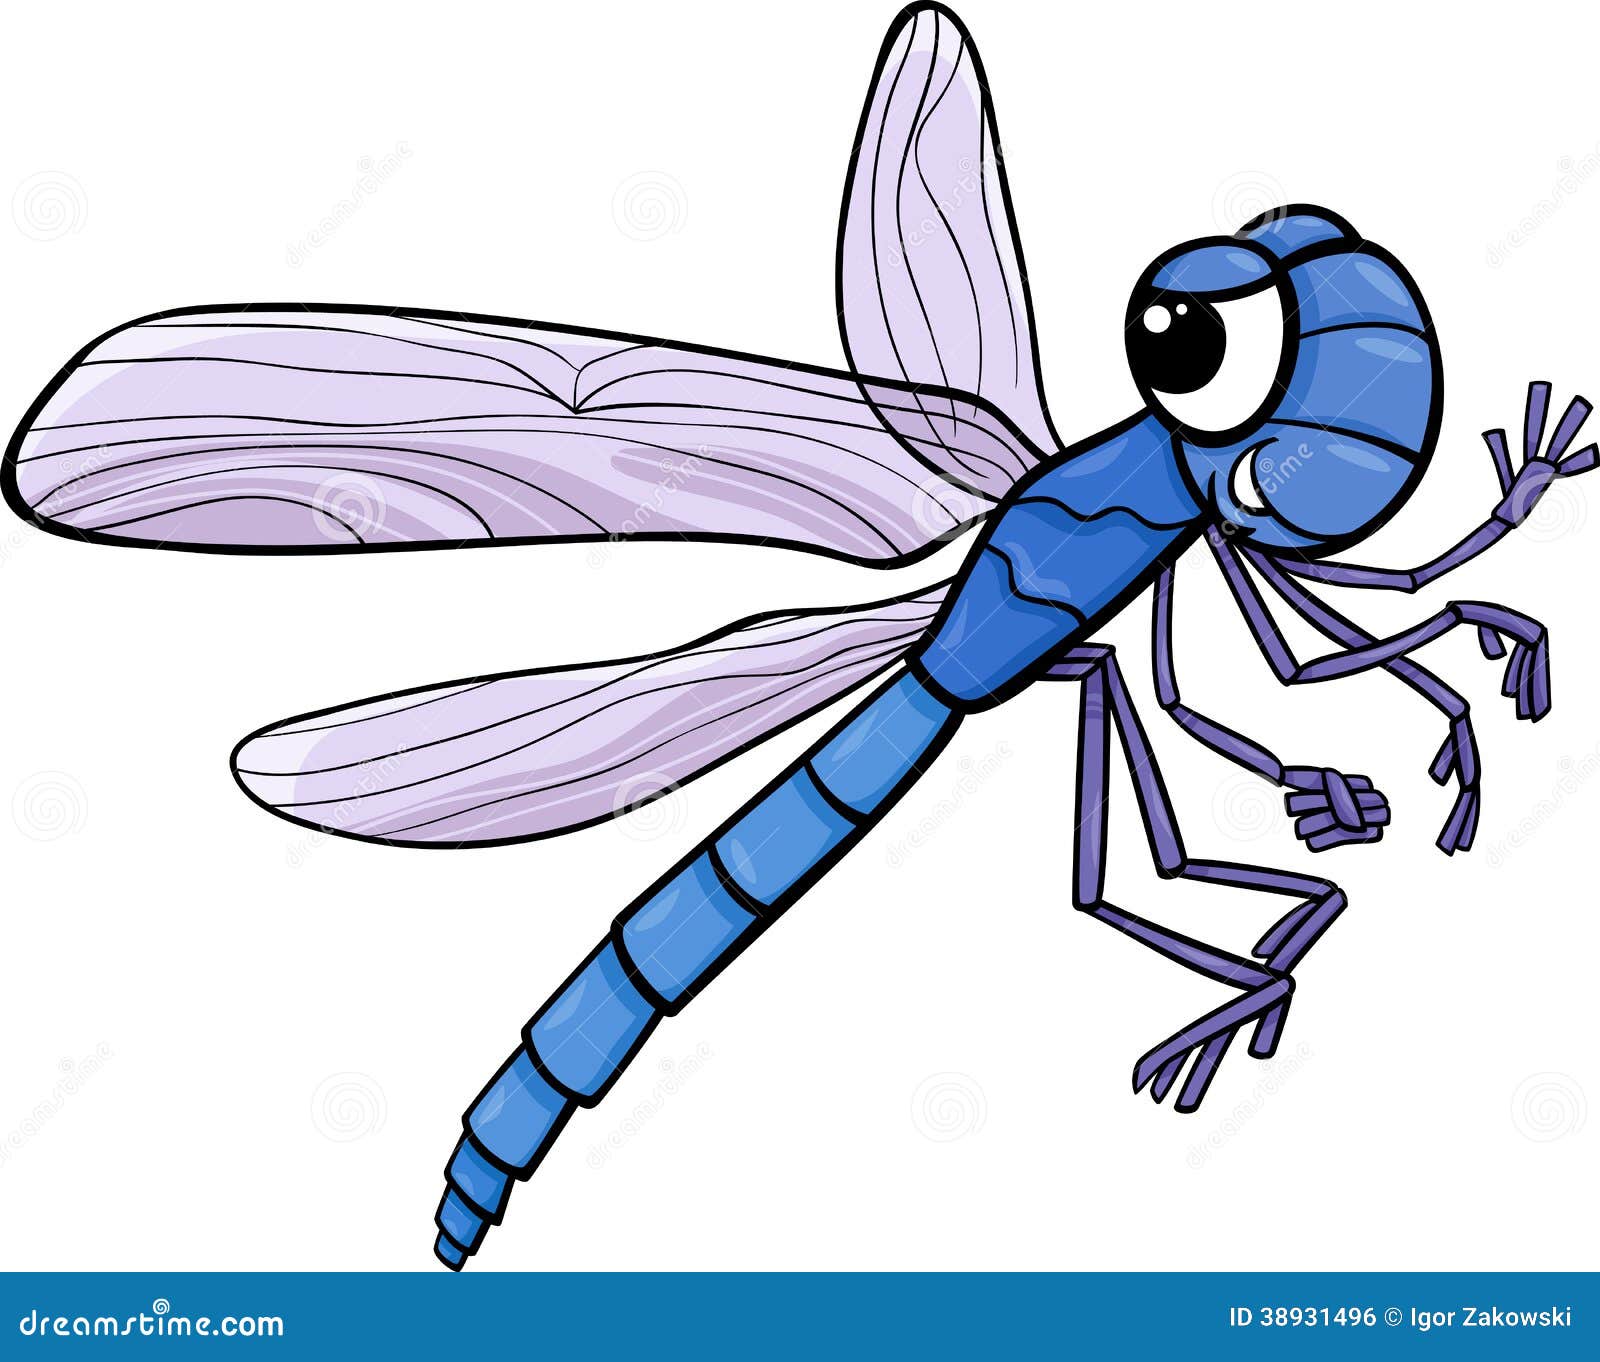 fly clipart cartoon - photo #31